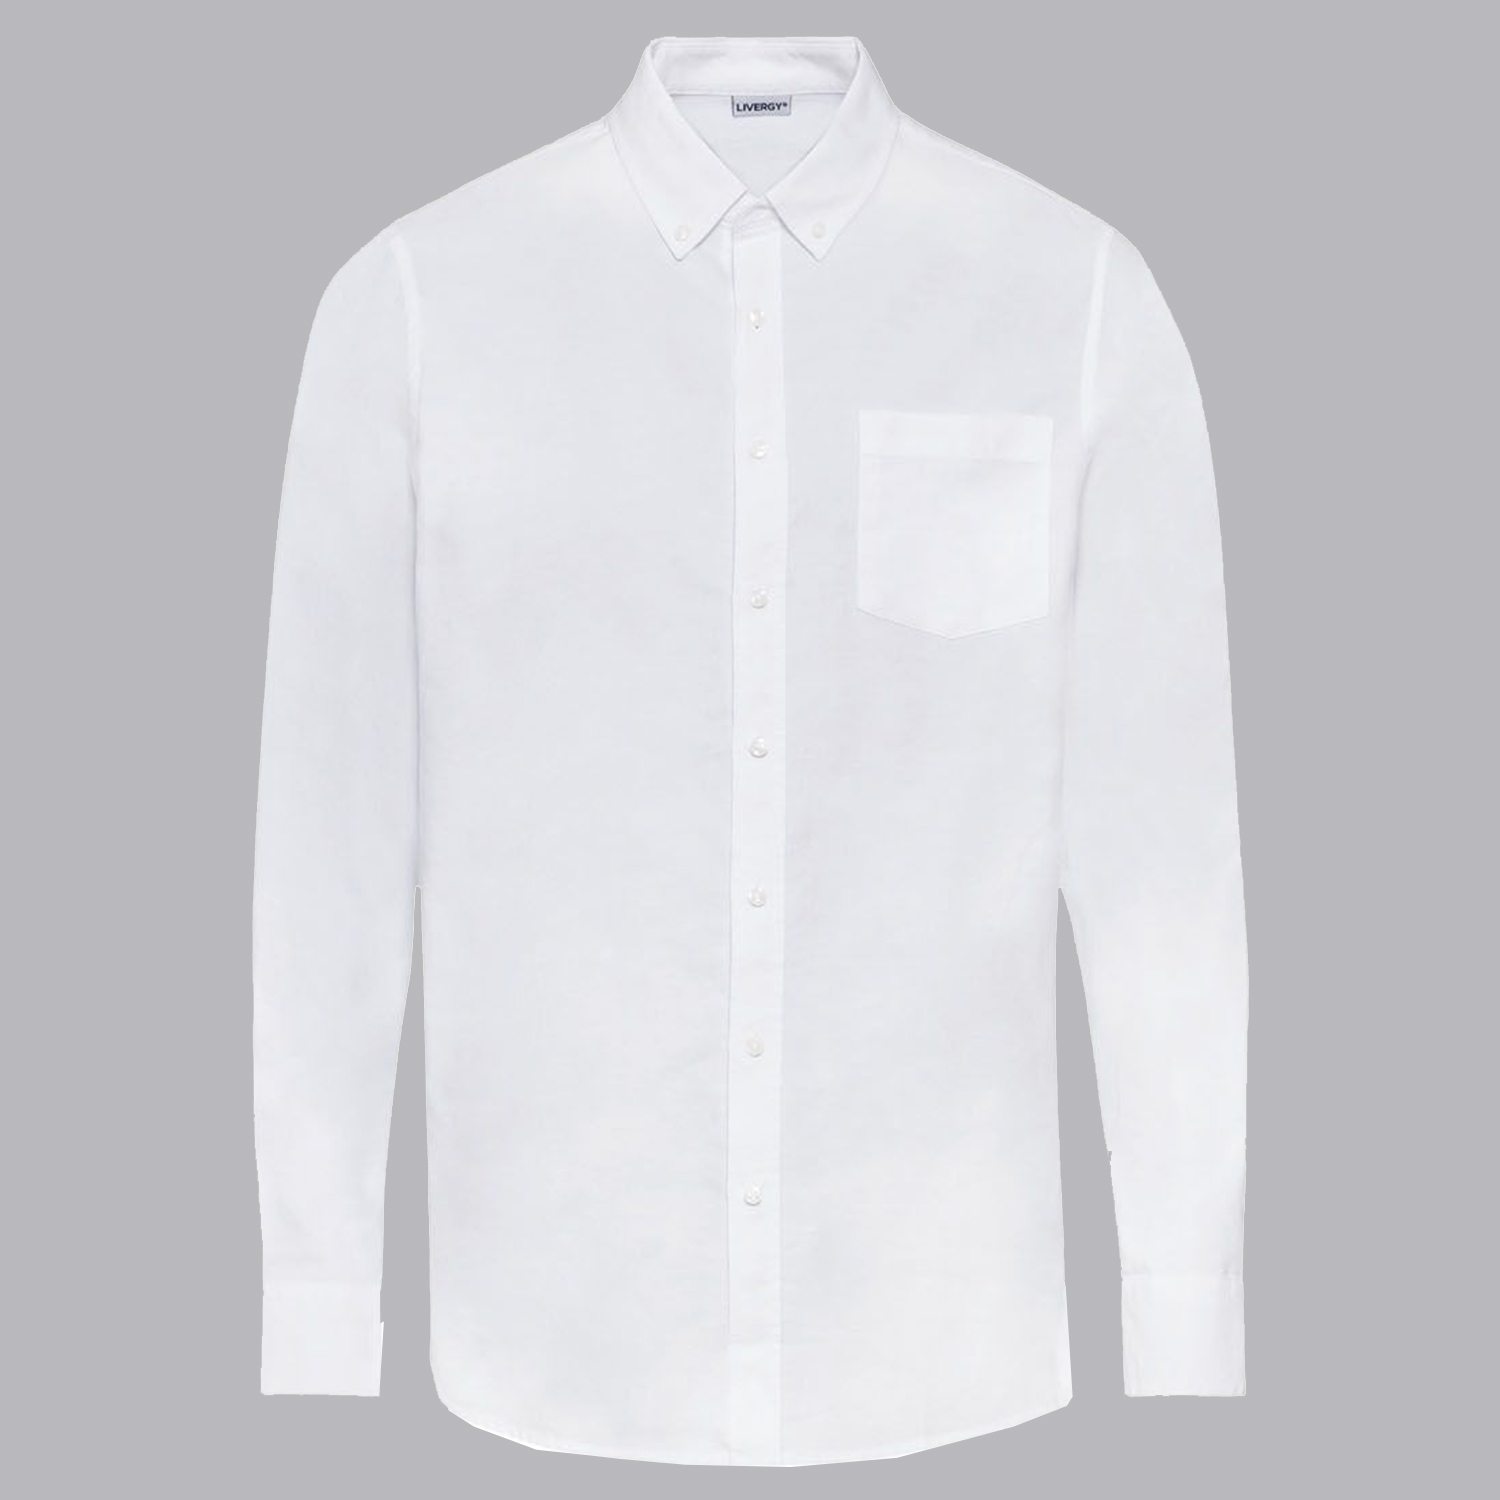 نکته خرید - قیمت روز پیراهن آستین بلند مردانه لیورجی مدل استایل کد UP-Modern2022 رنگ سفید خرید